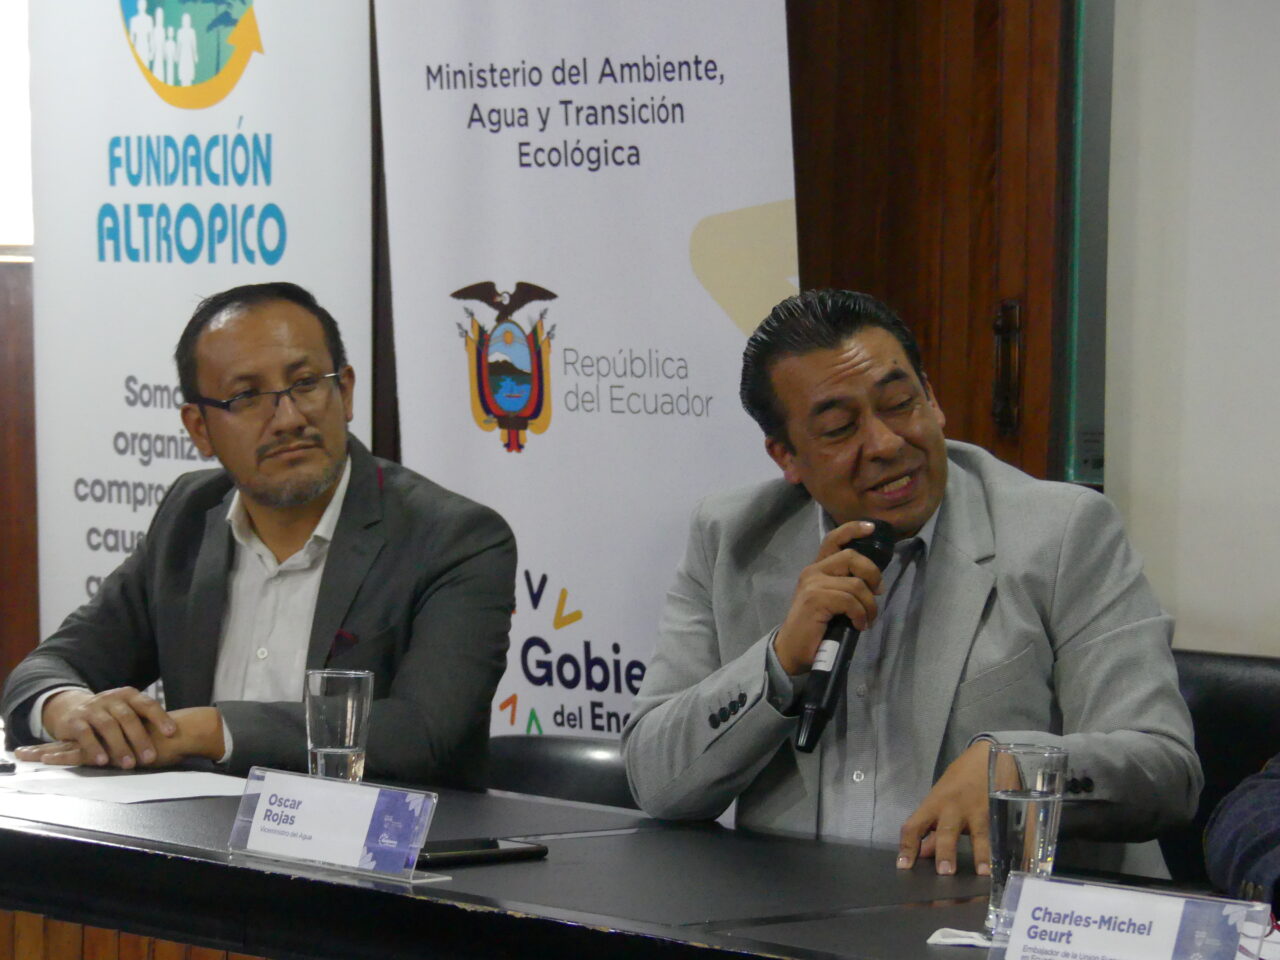 José Luis Naula – Directeur de la coopération internationale du Ministère de l'environnement, de l'eau et de la transition écologique, et Oscar Rojas – Vice-Ministre de l'Eau en Équateur